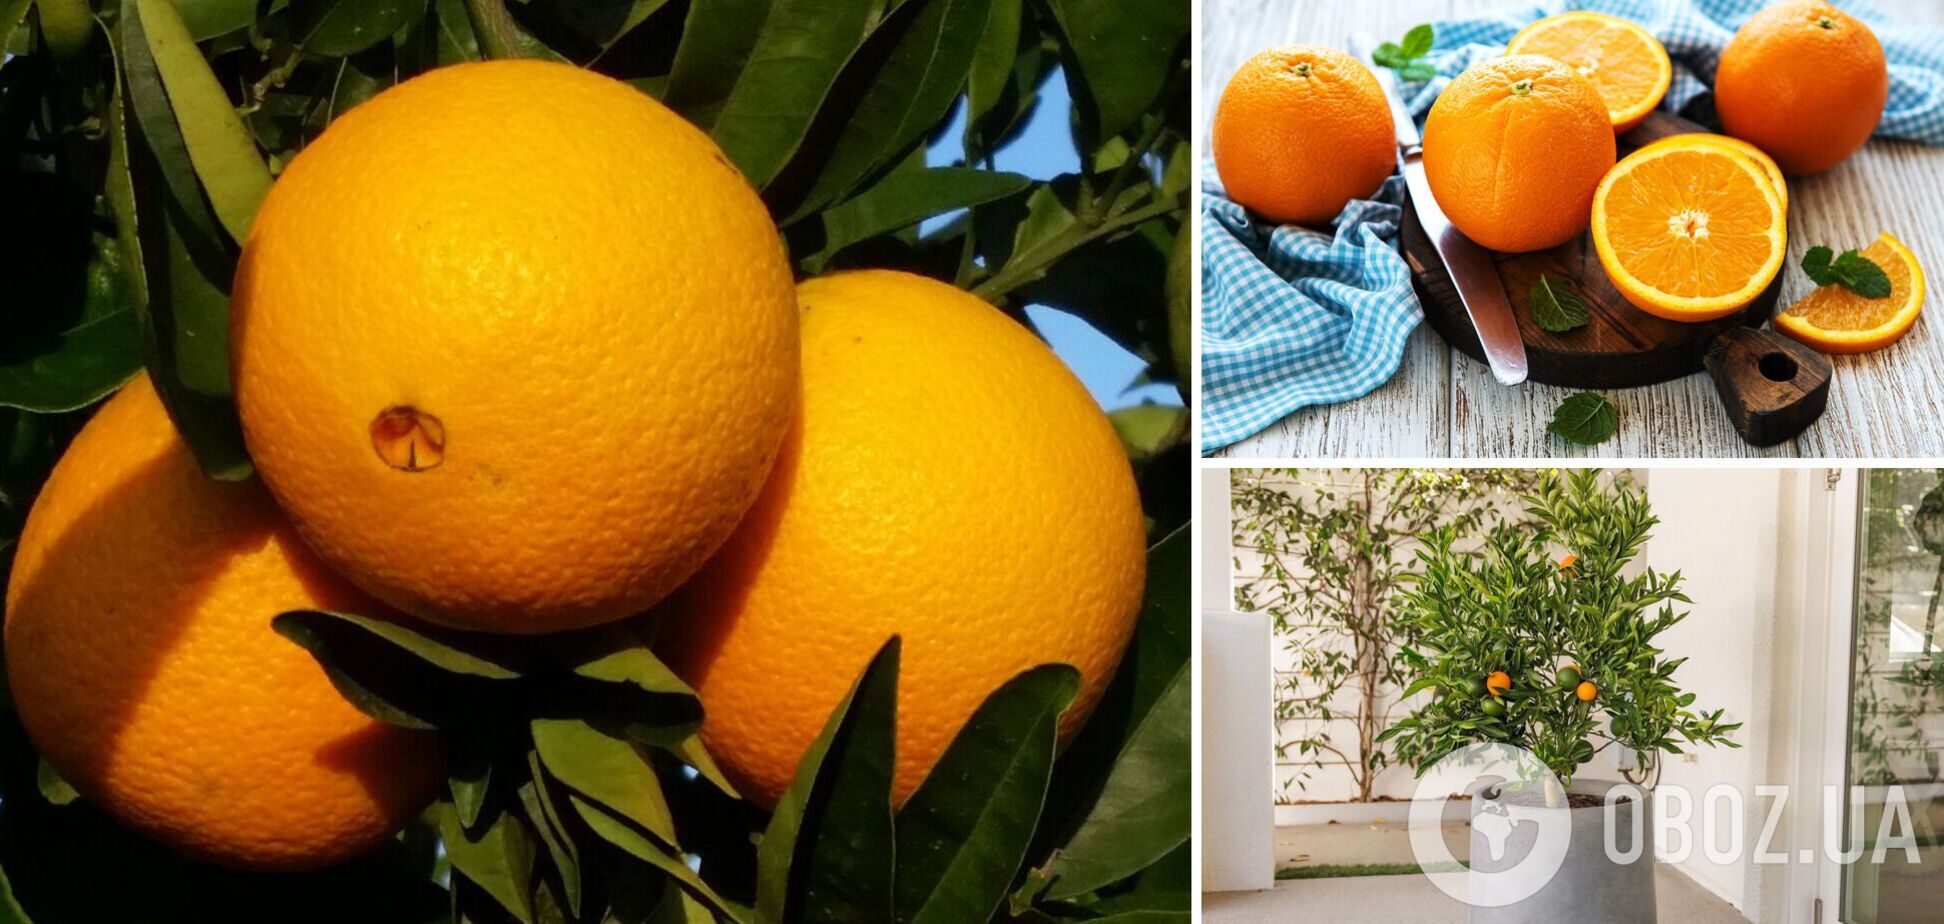 Как правильно выбирать апельсины: всего одна хитрость поможет найти самые сладкие